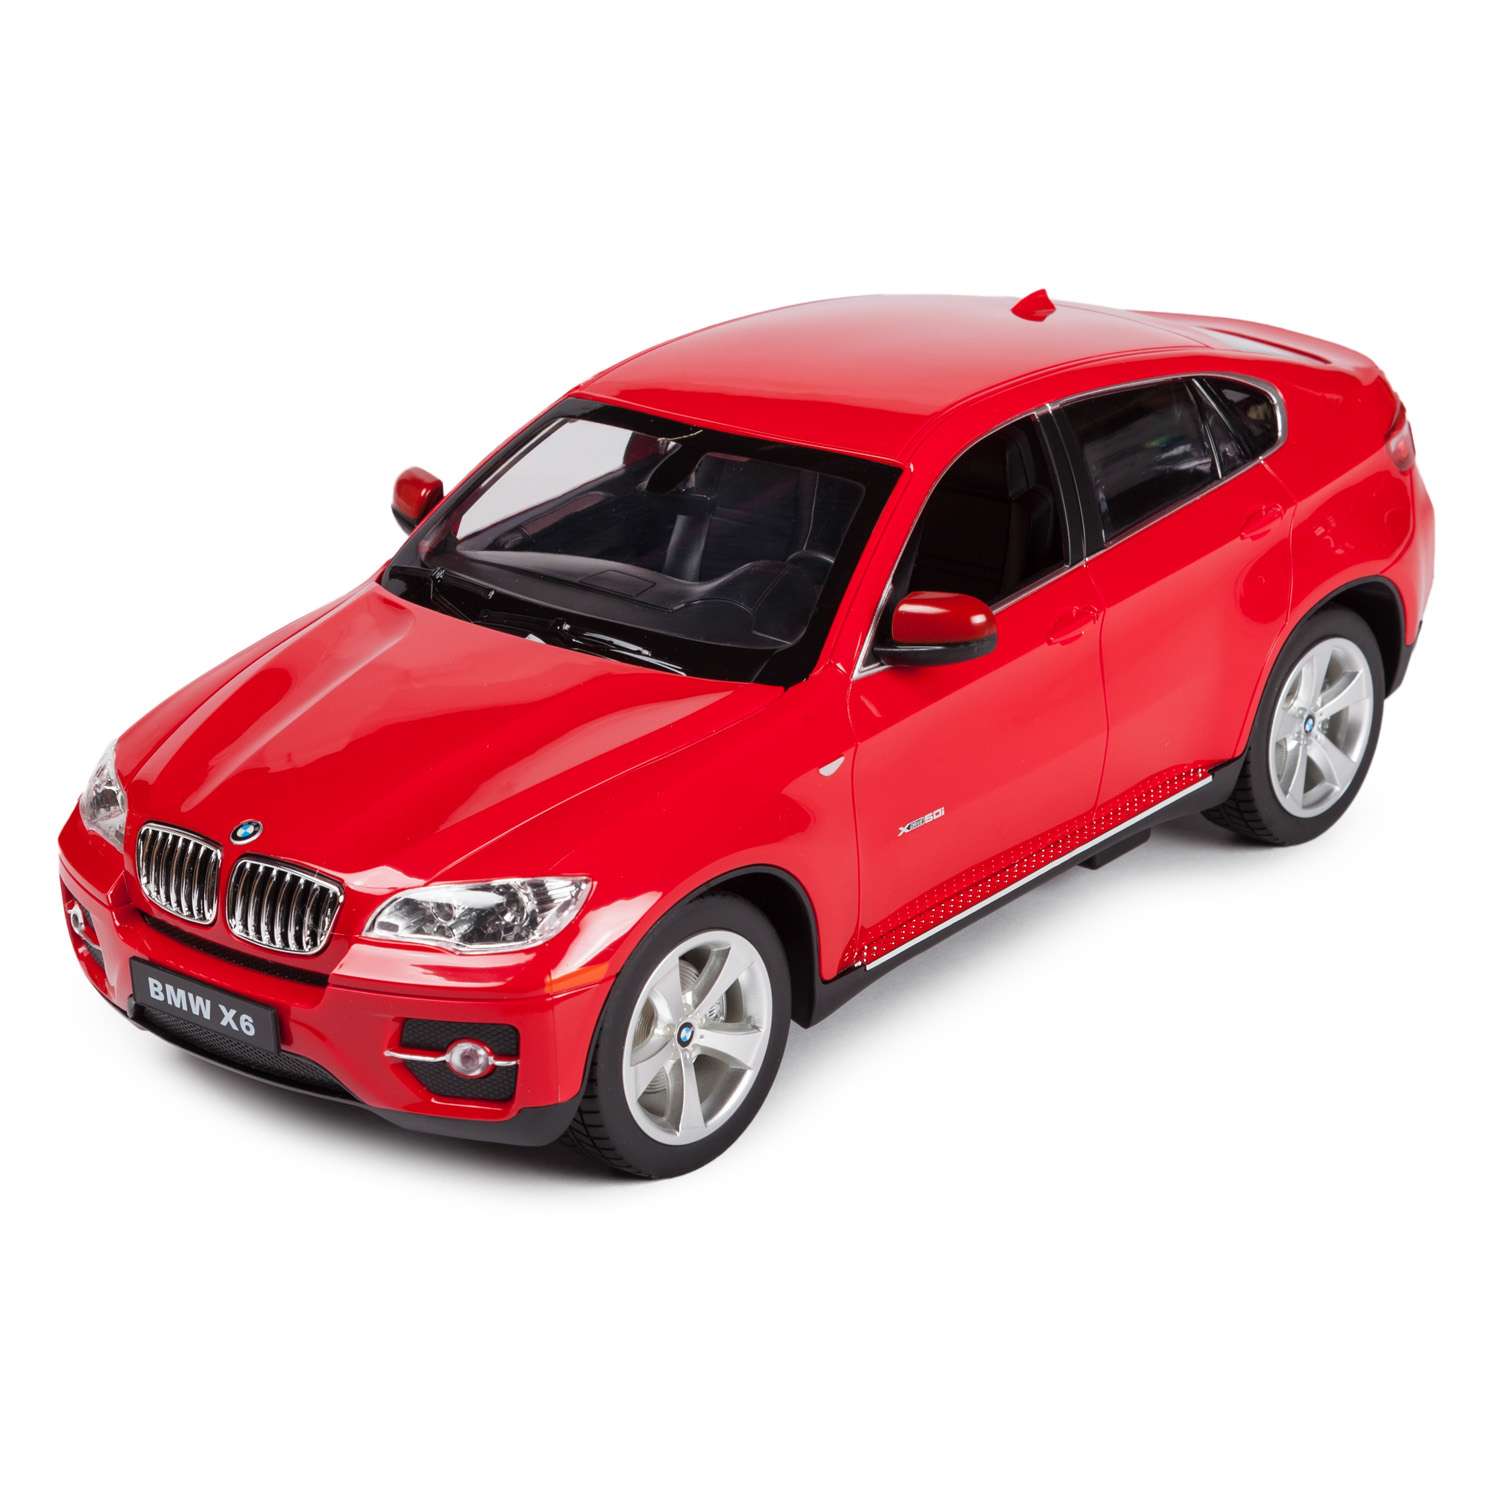 Машинка радиоуправляемая Rastar BMW X6 1:14 красная - фото 2